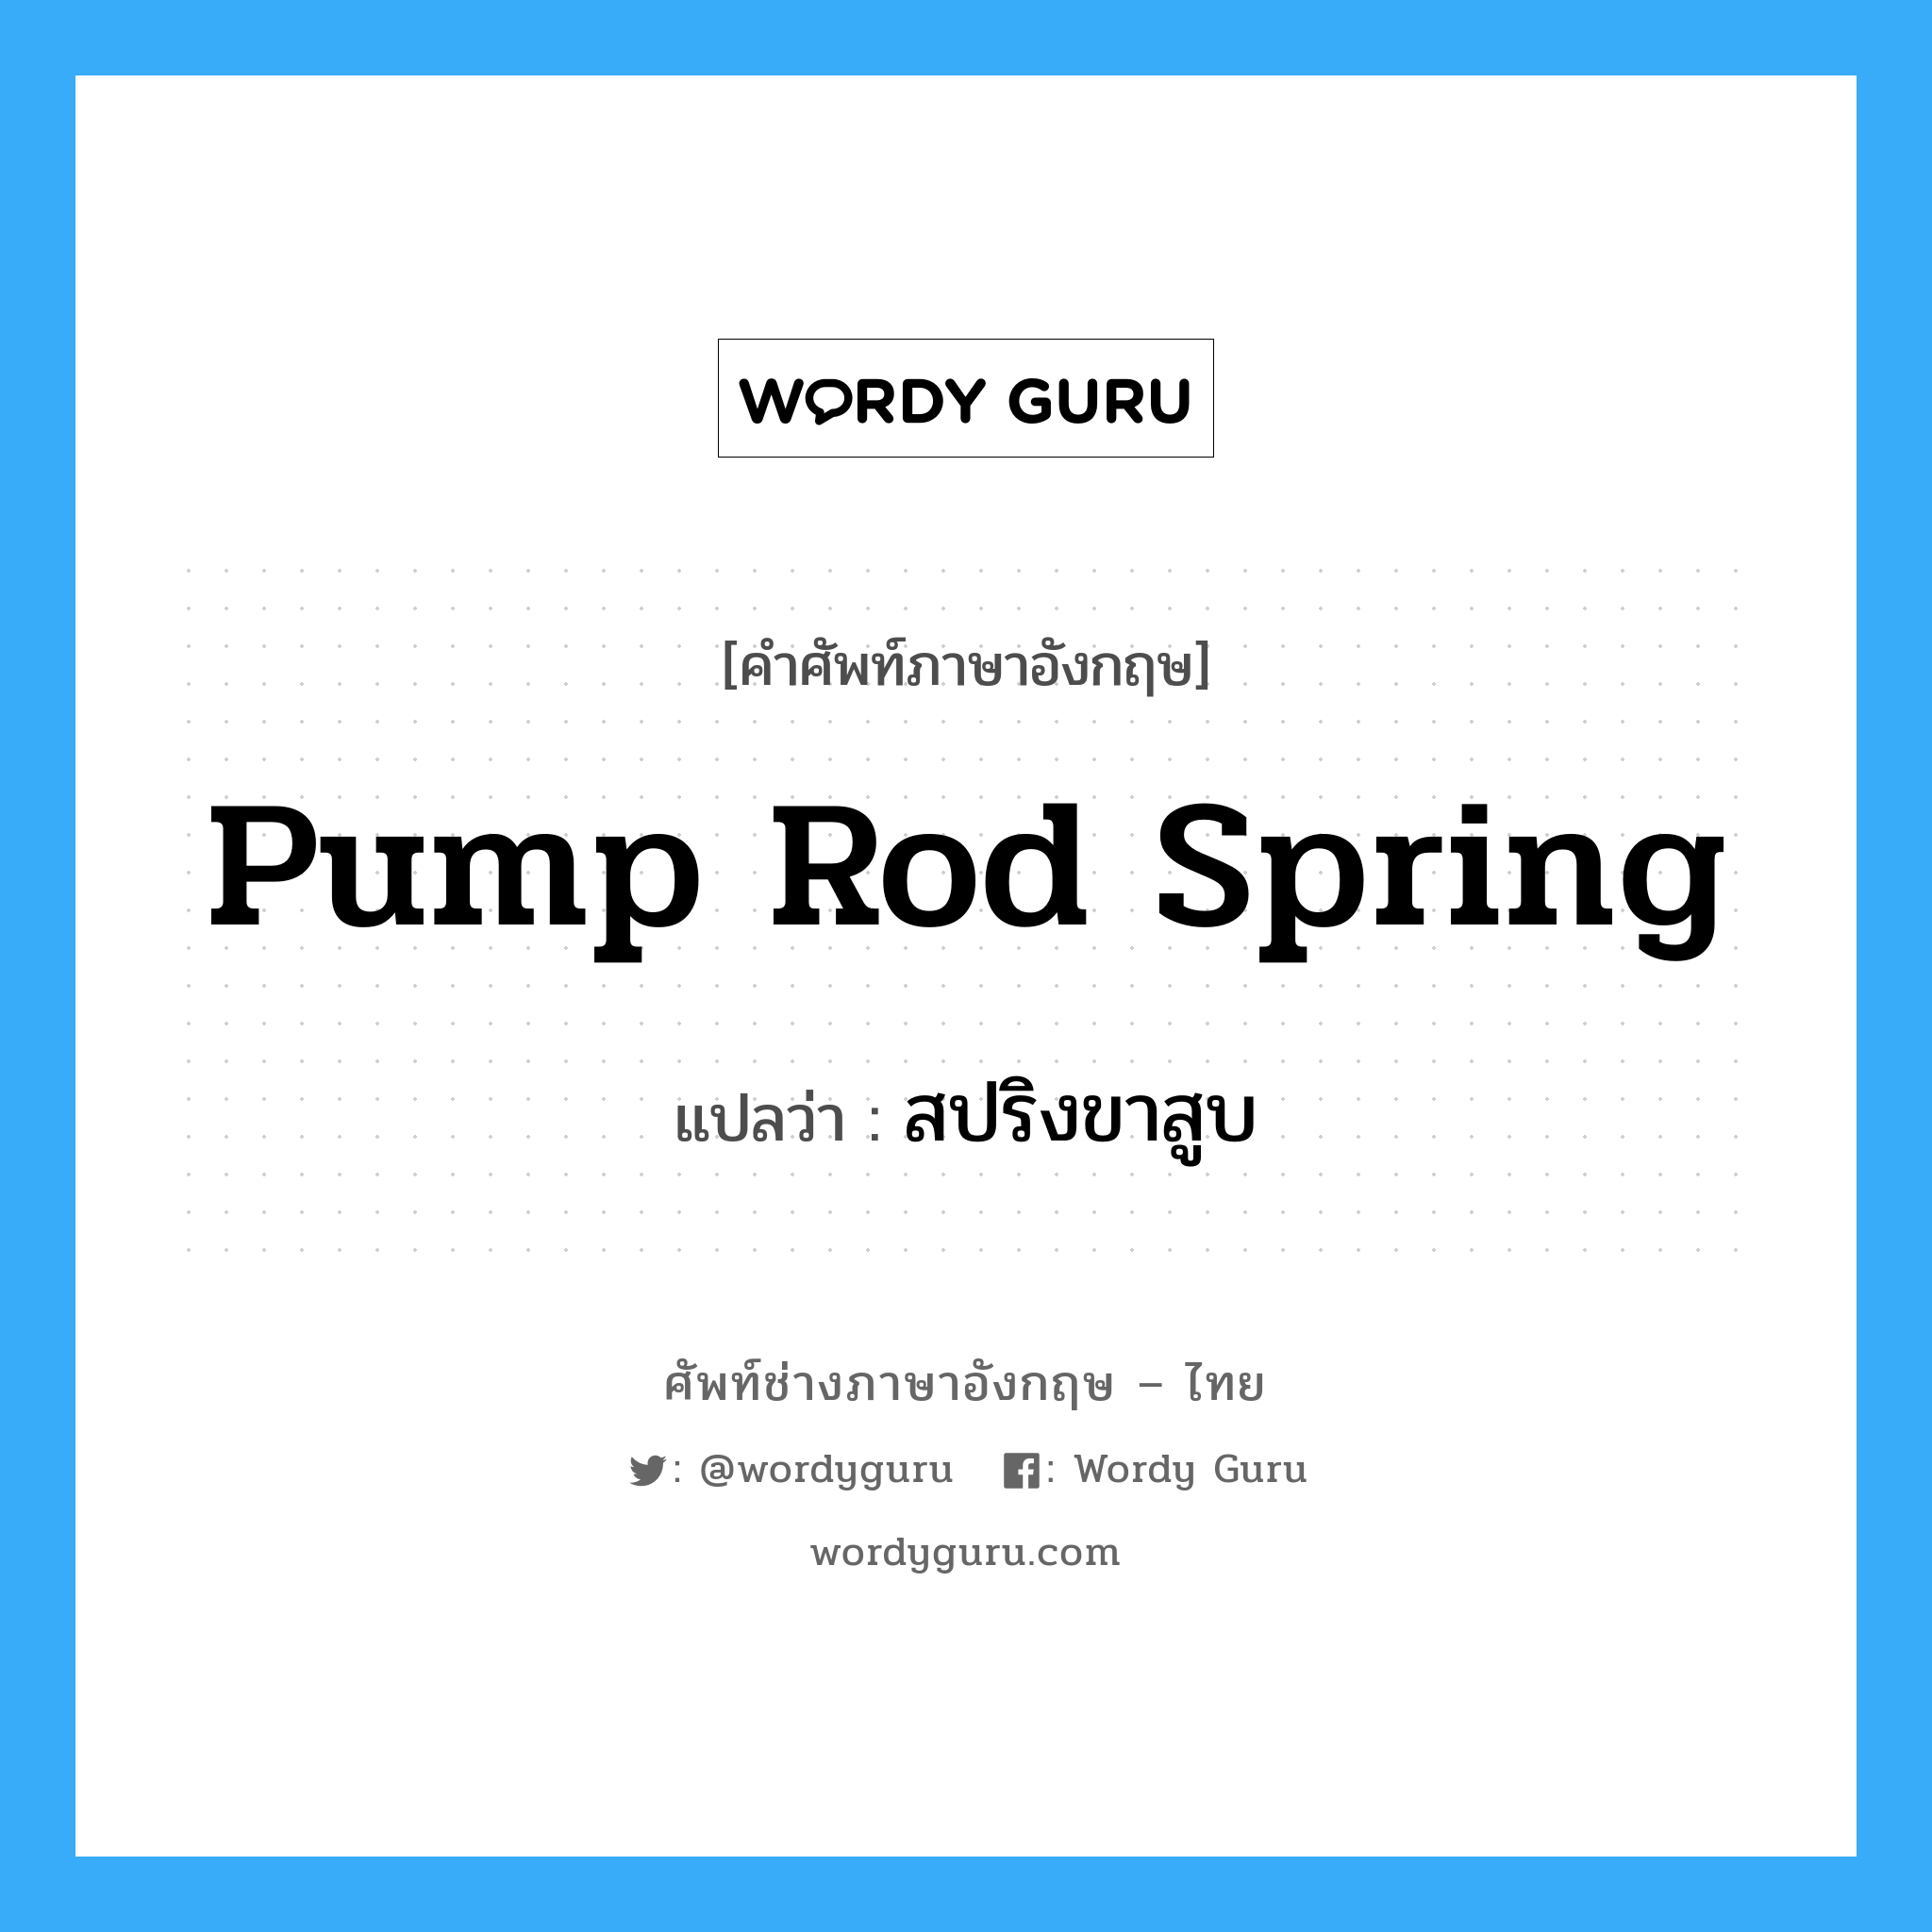 pump rod spring แปลว่า?, คำศัพท์ช่างภาษาอังกฤษ - ไทย pump rod spring คำศัพท์ภาษาอังกฤษ pump rod spring แปลว่า สปริงขาสูบ